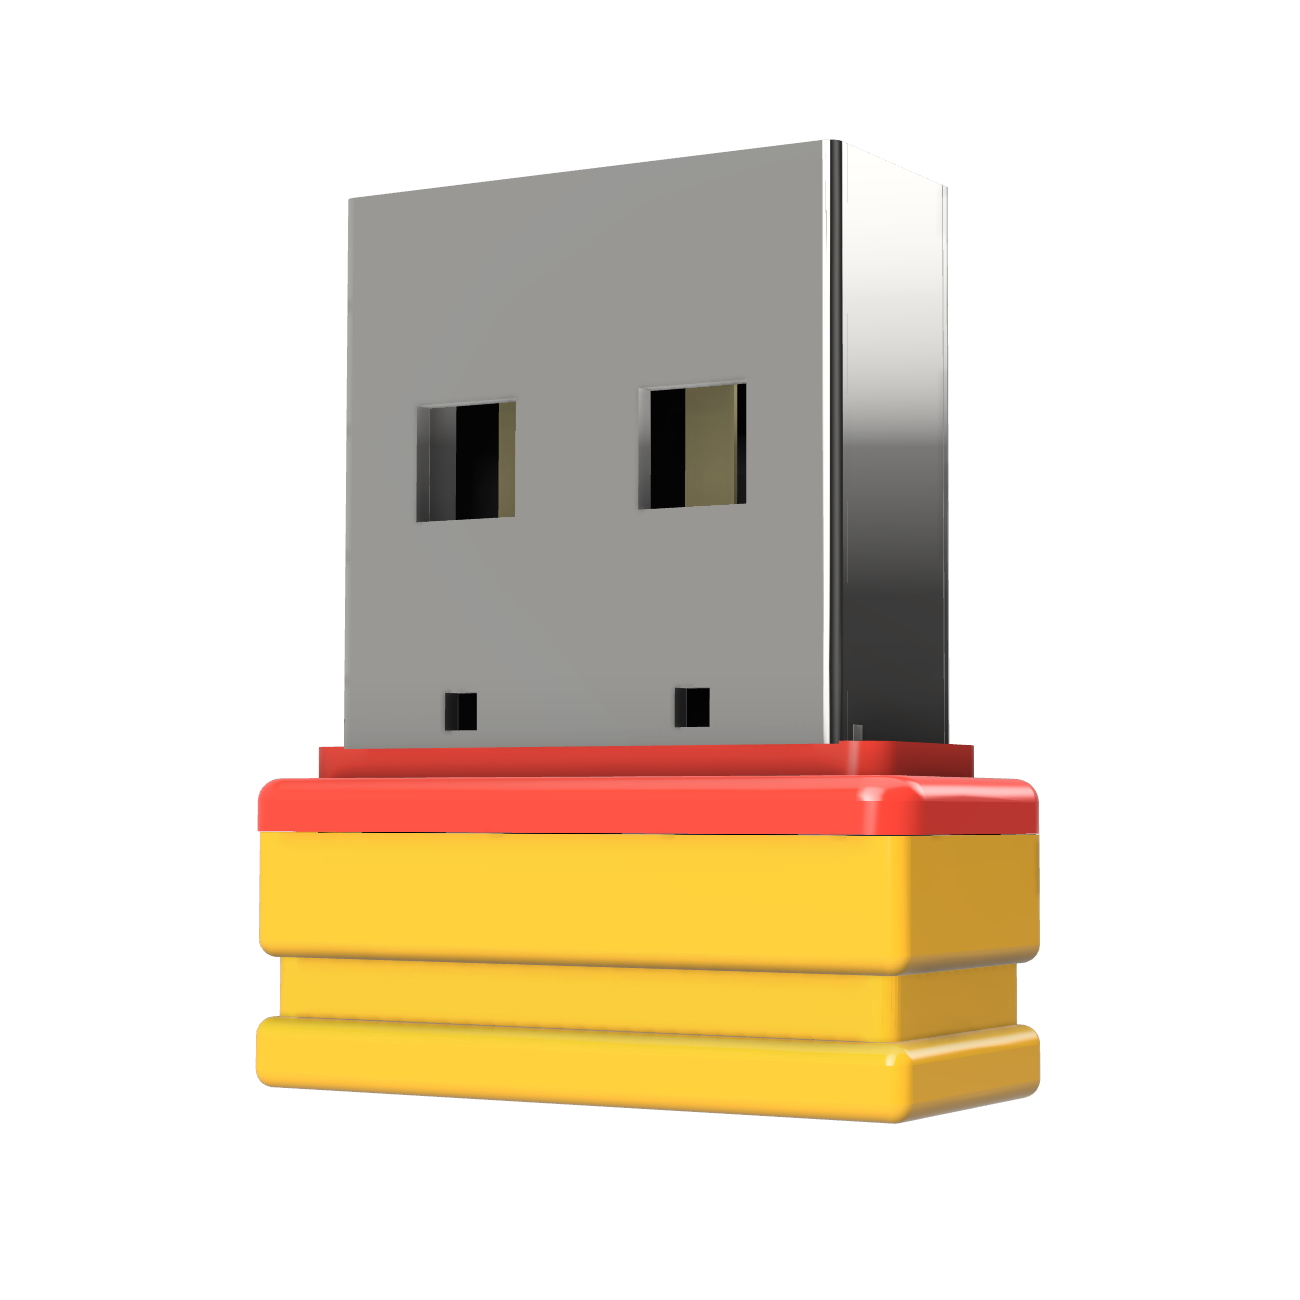 GB) USB ®ULTRA GERMANY P1 (Gelb/Rot, USB-Stick 64 Mini